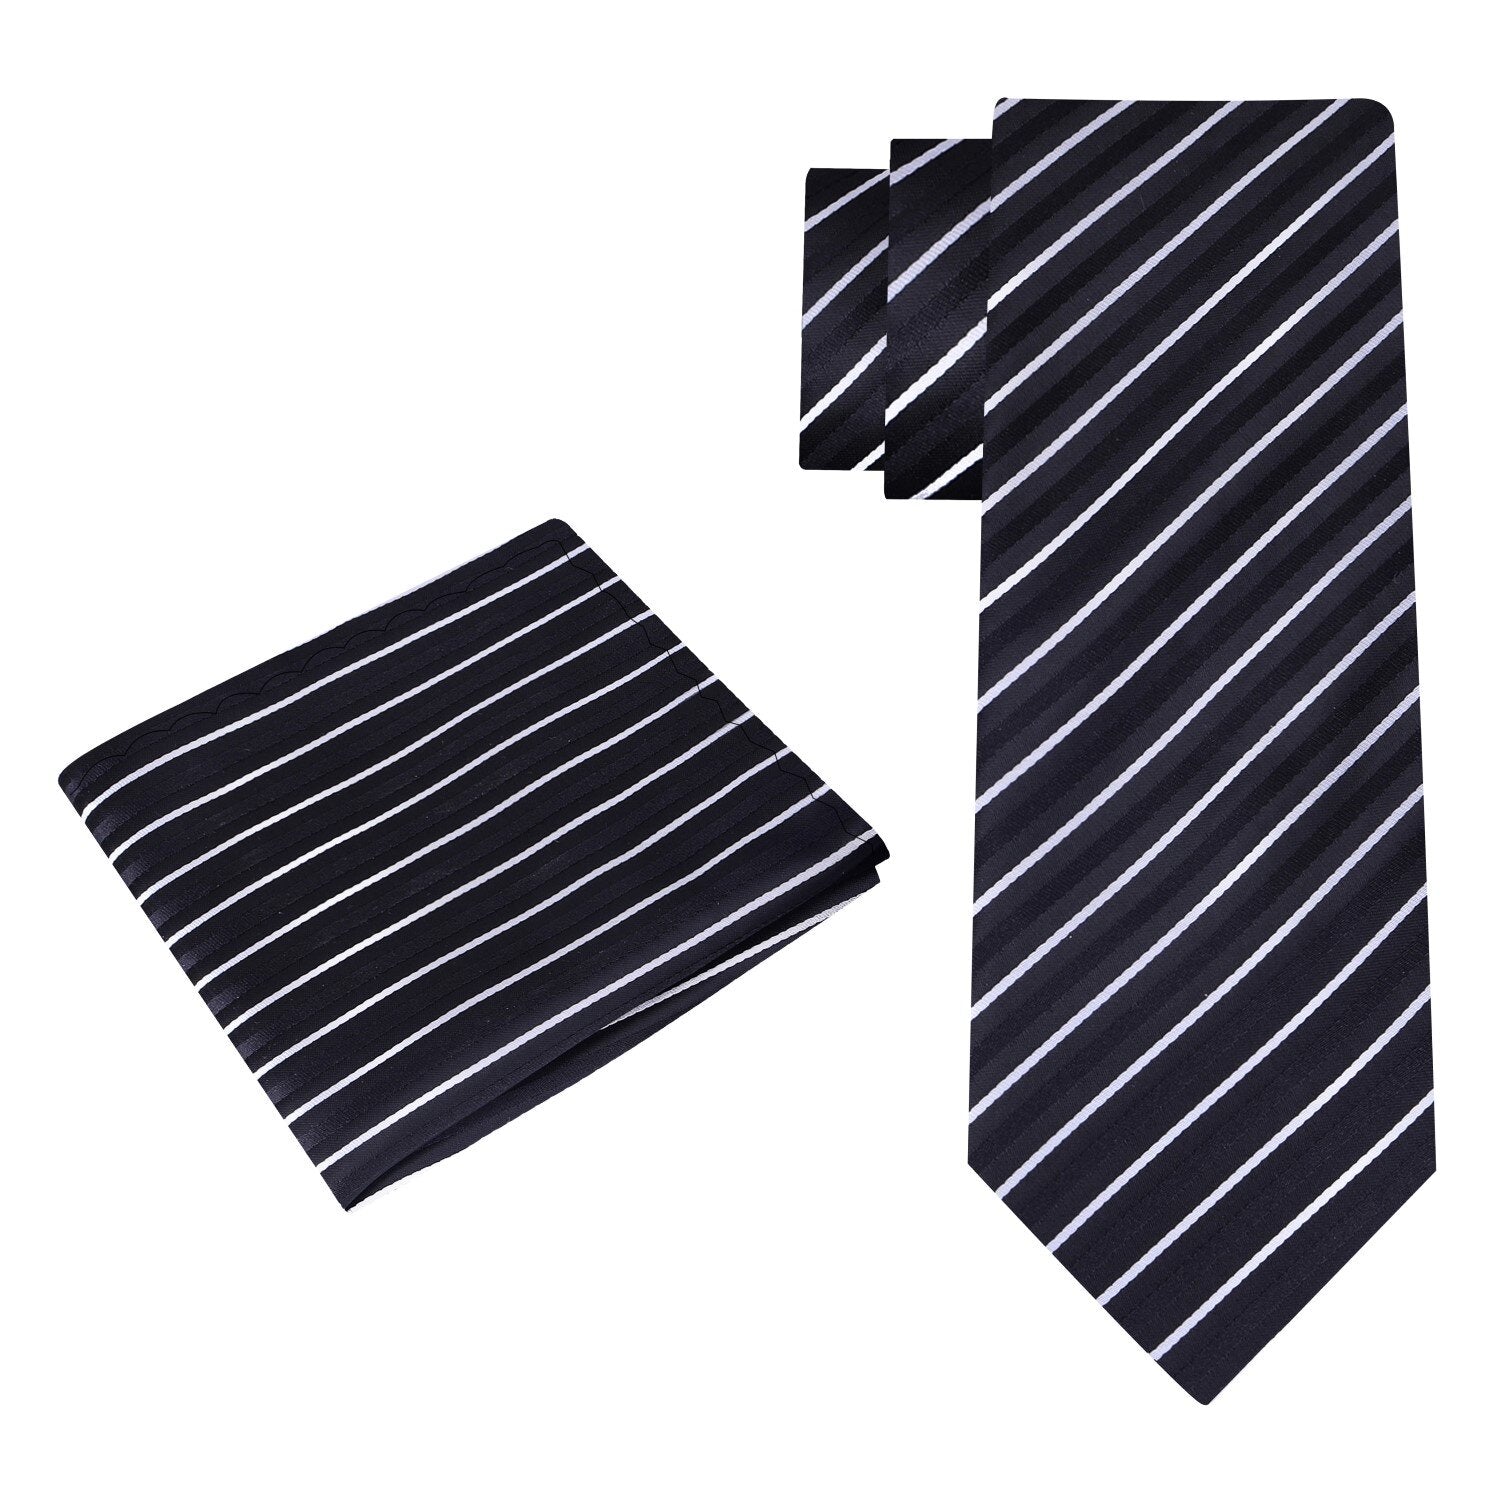 Alt View: Black, White Stripe Tie and Square